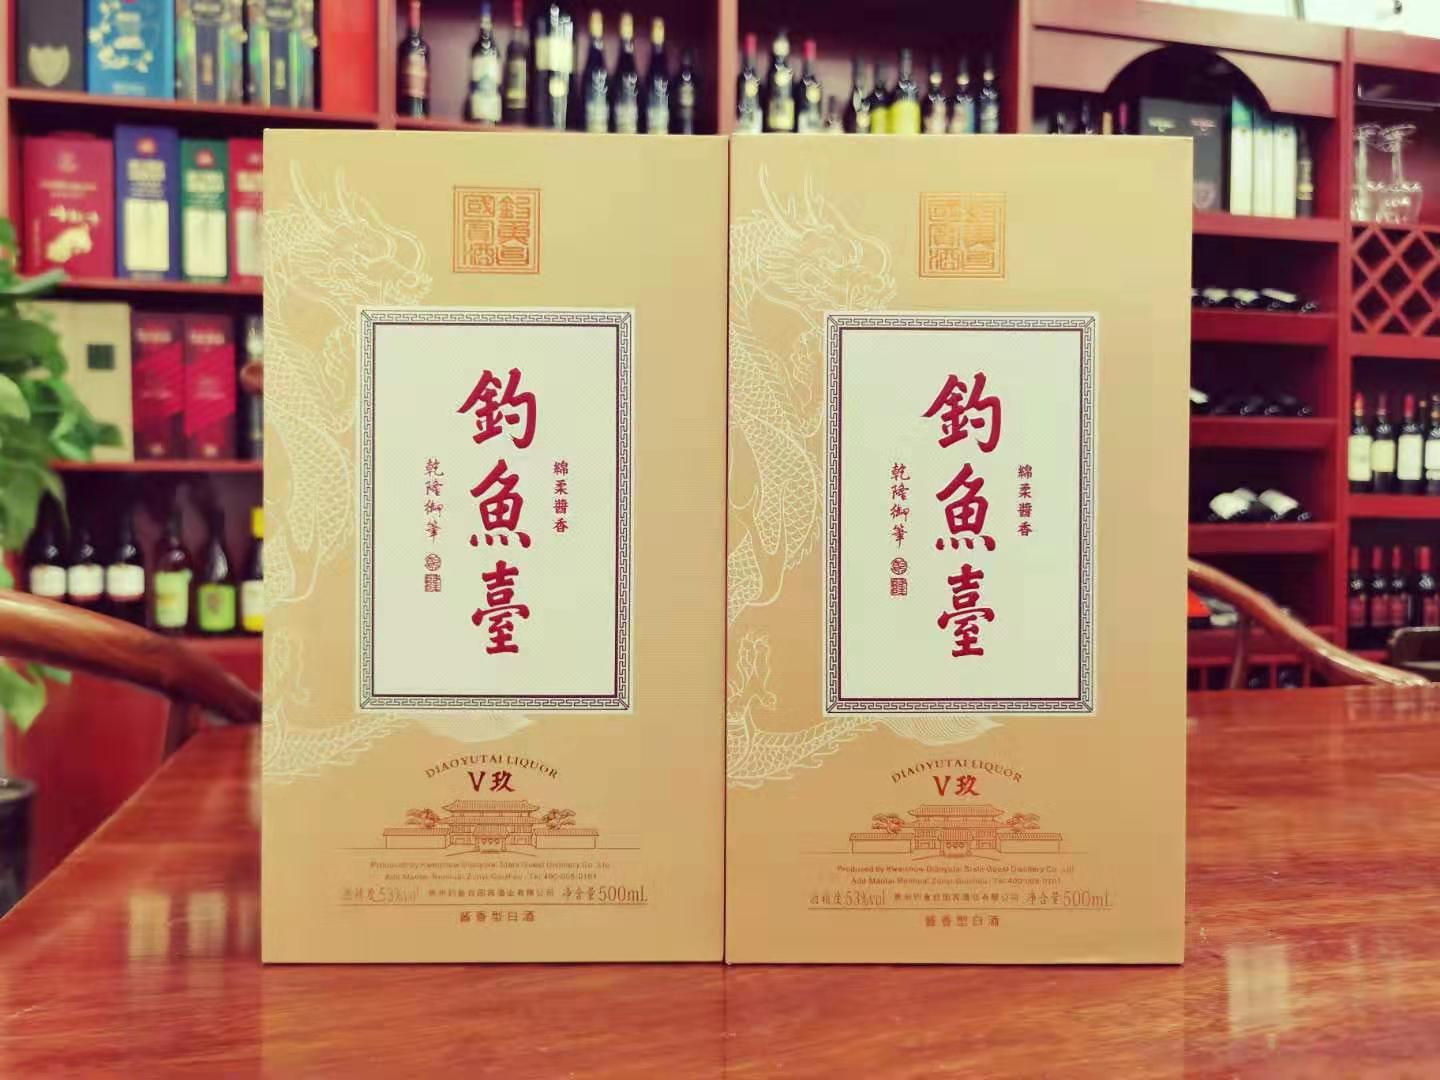 上海钓鱼台酒【新品钓鱼台v9/v玖】低价销售09